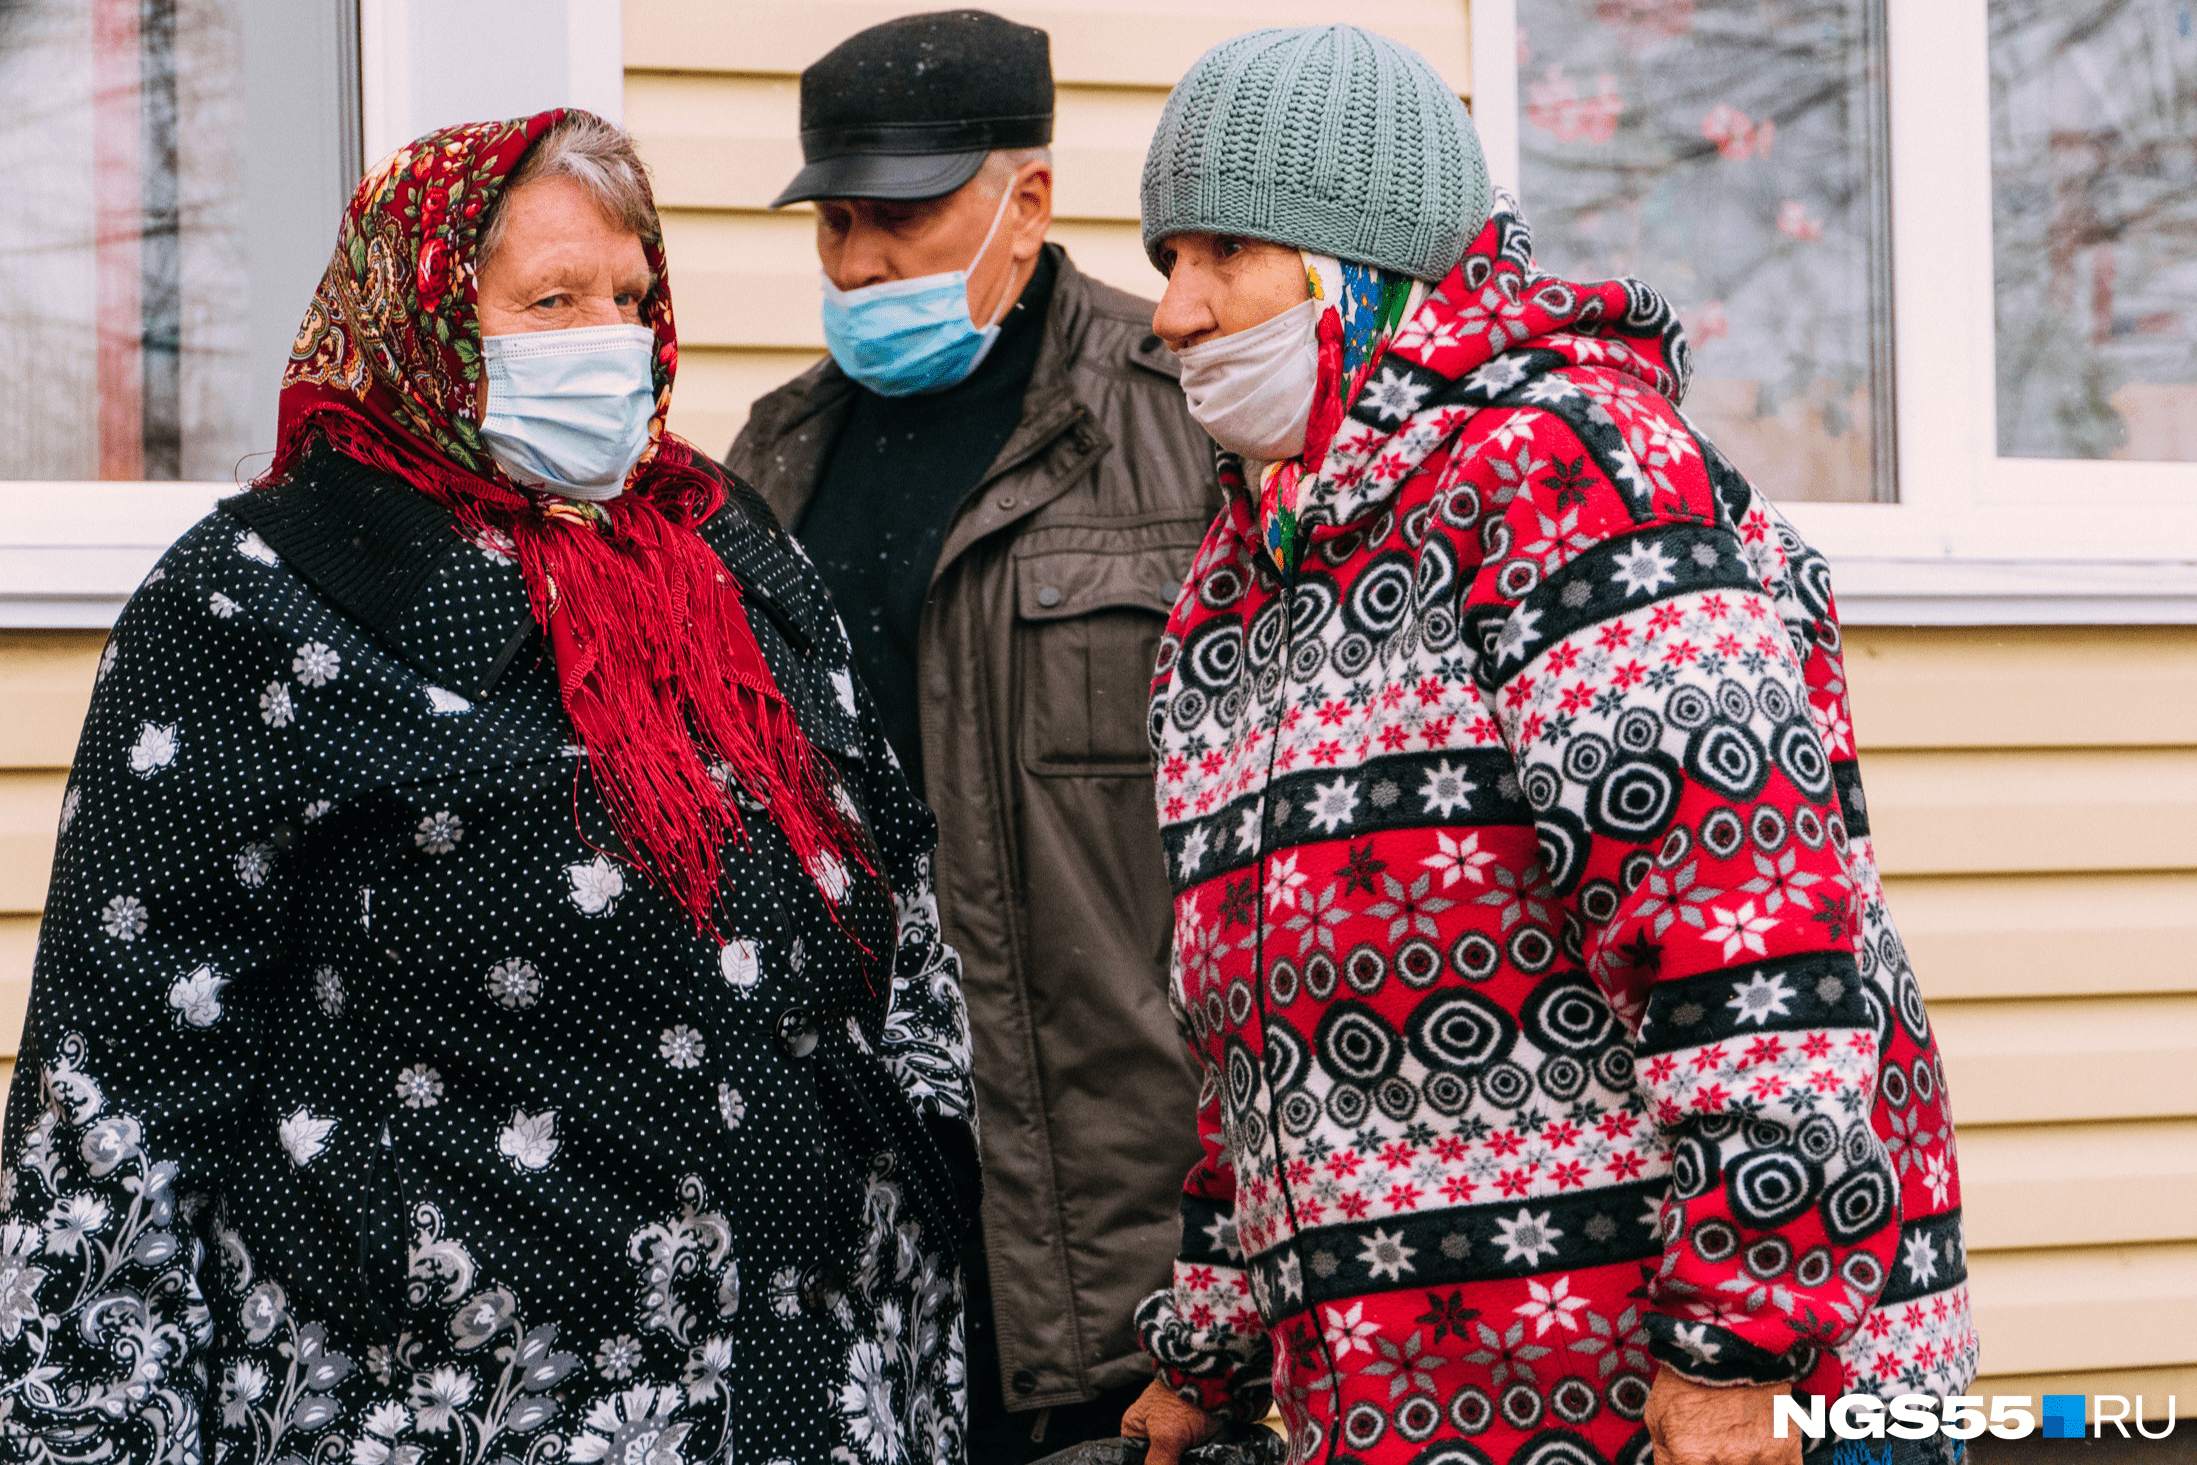 Многие пожилые люди носят маски не для защиты от вируса, а потому что так надо